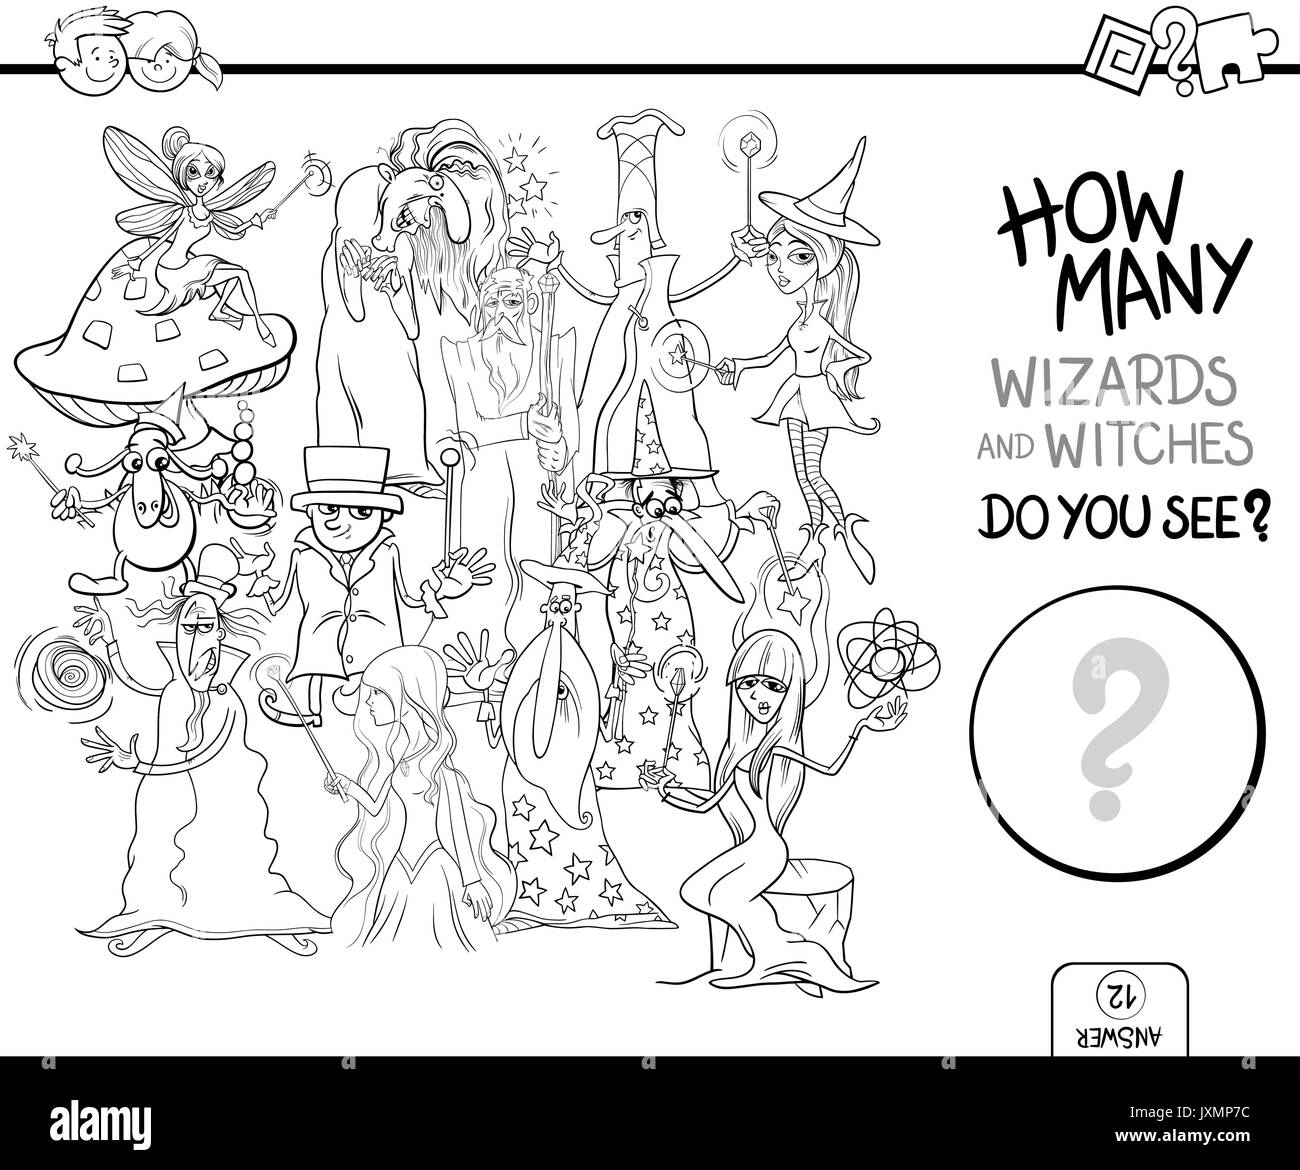 Bianco e Nero Cartoon illustrazione di Educational attività di conteggio gioco per bambini con maghi e streghe personaggi di fantasia nella pagina di colorazione Illustrazione Vettoriale